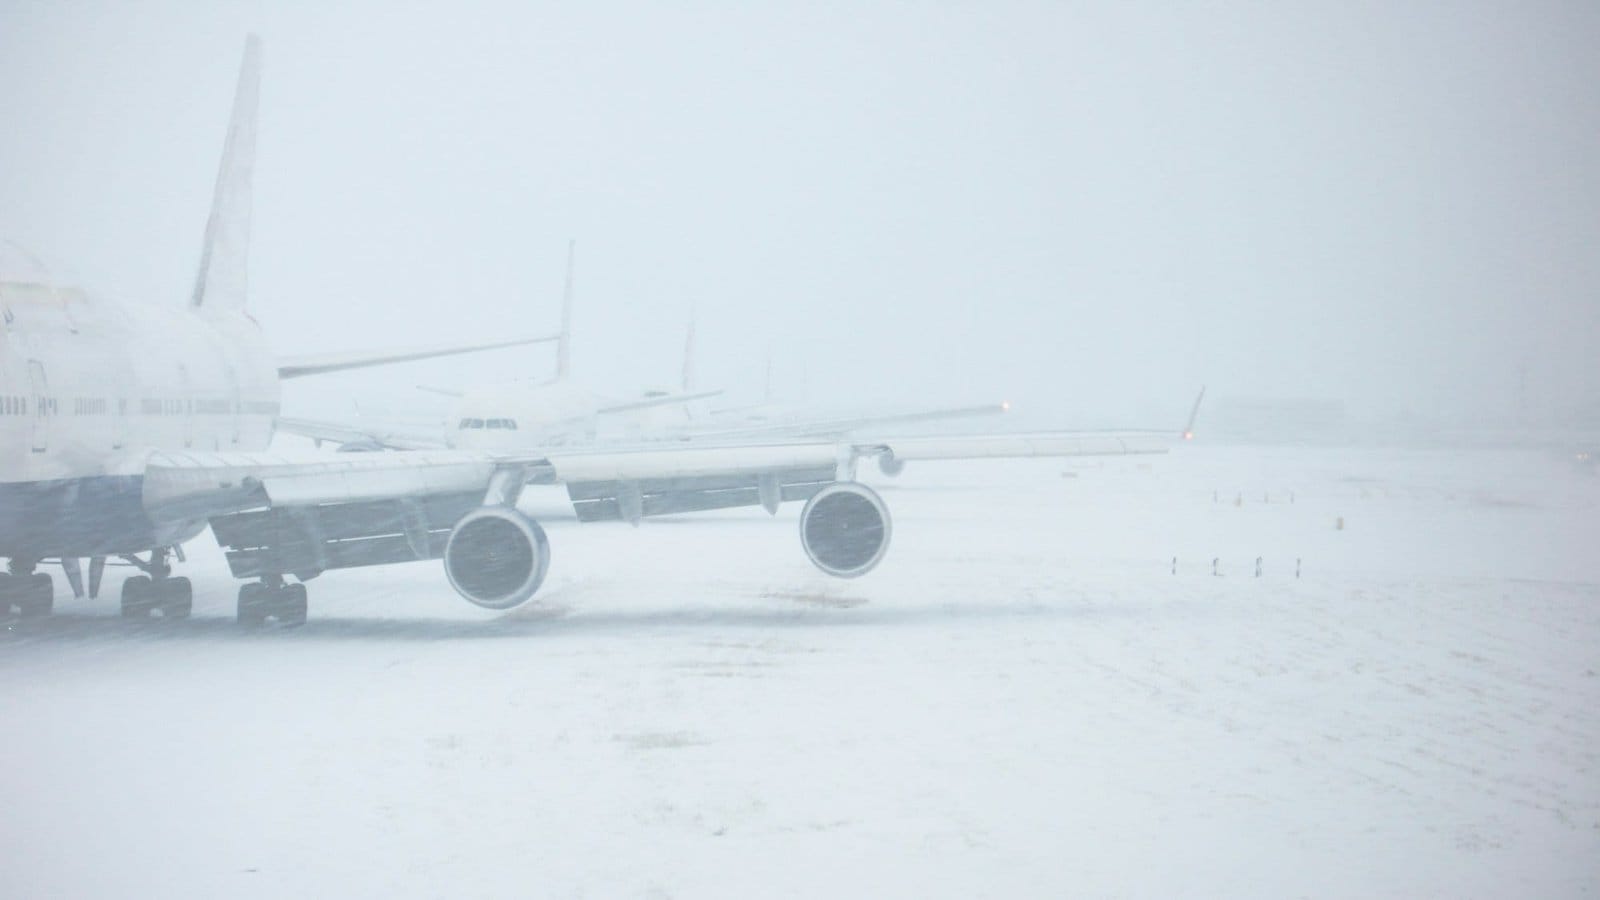 Airplane on snowy runway